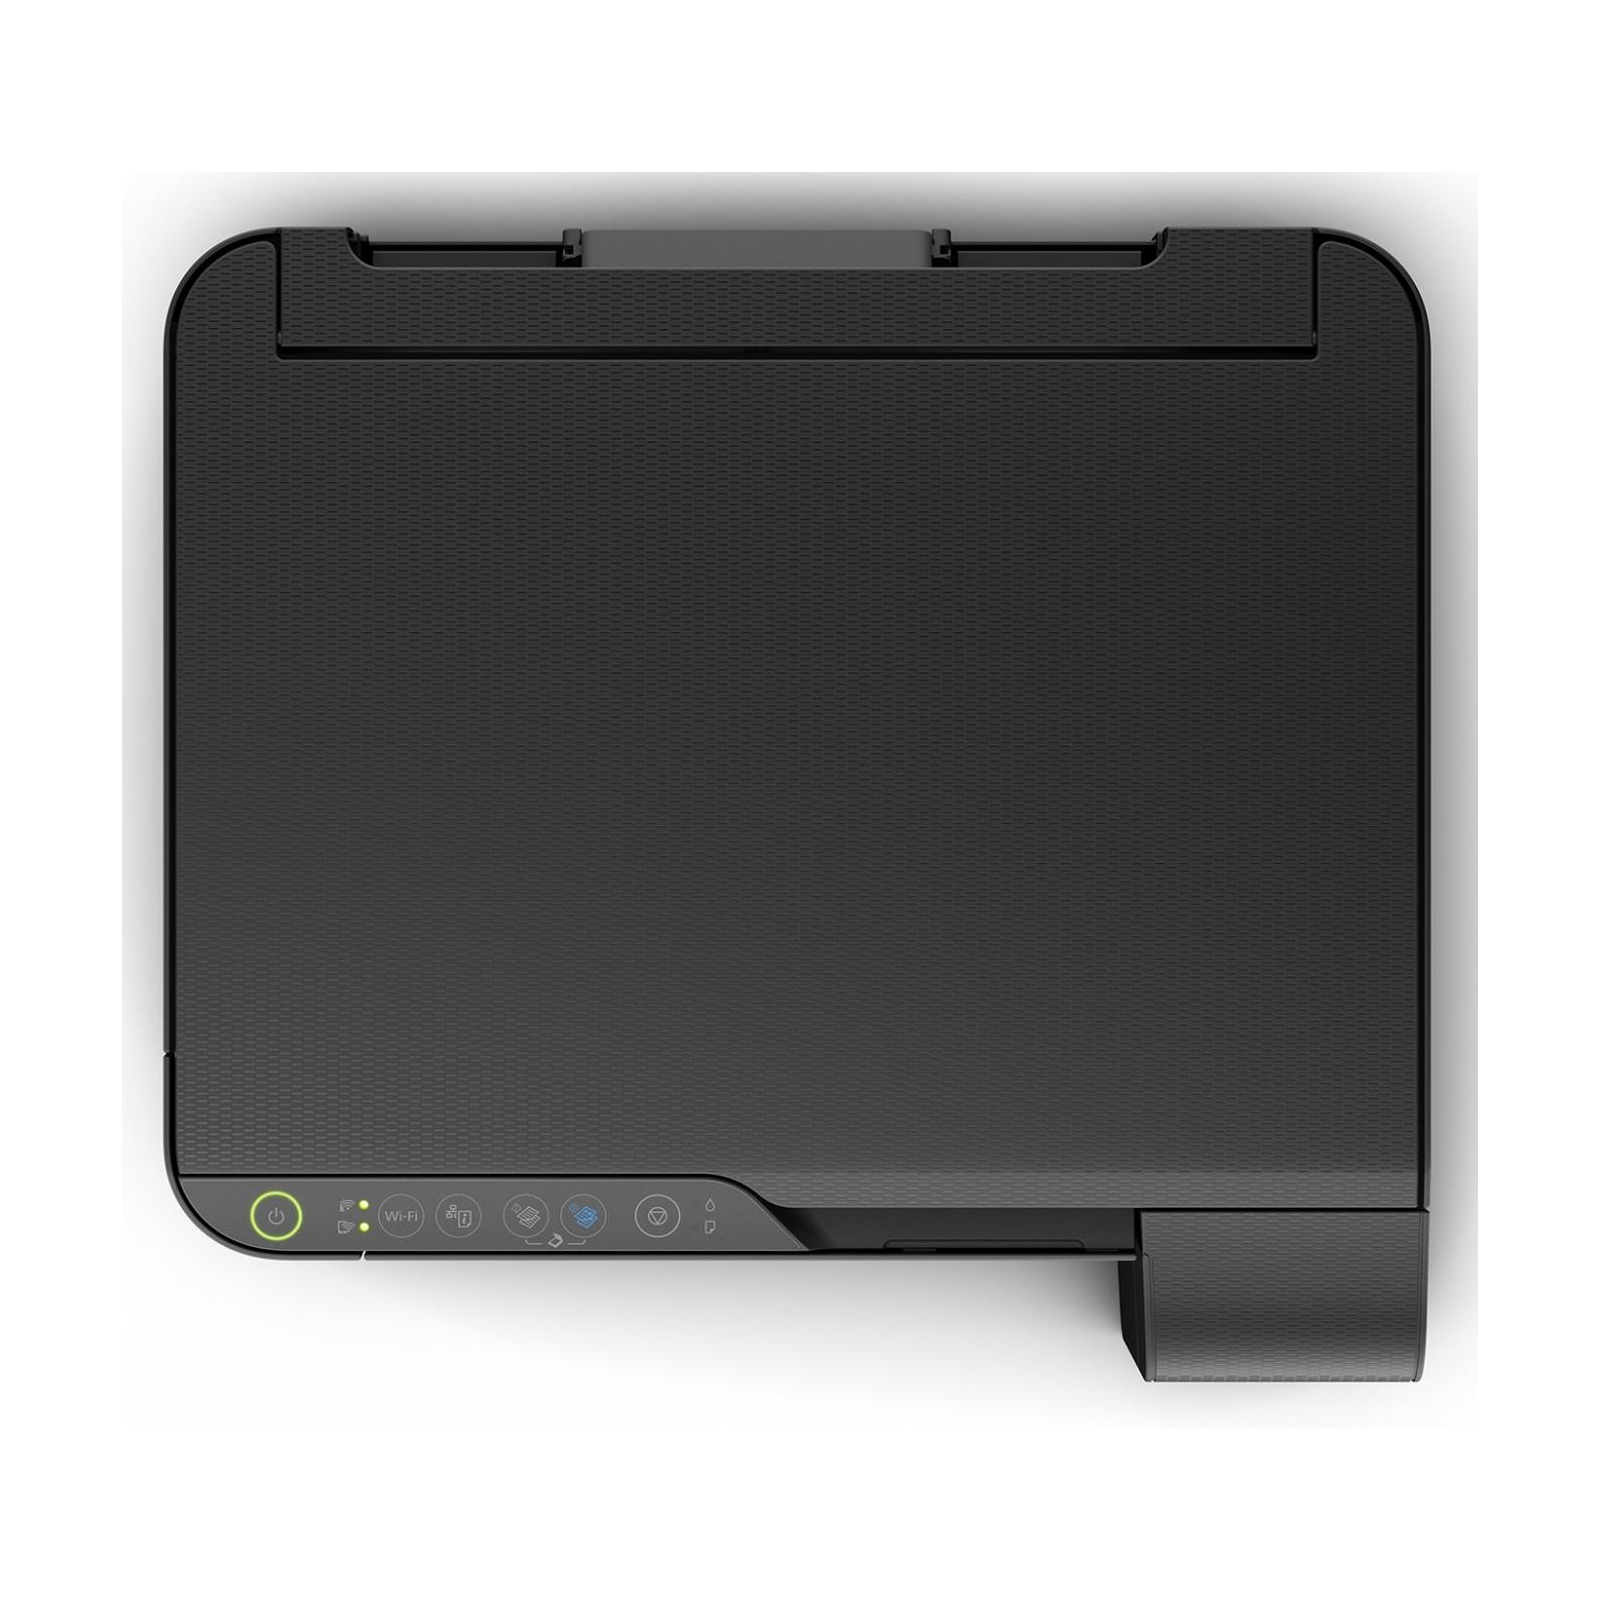 Многофункциональное устройство Epson L3150 c WiFi (C11CG86409) изображение 2